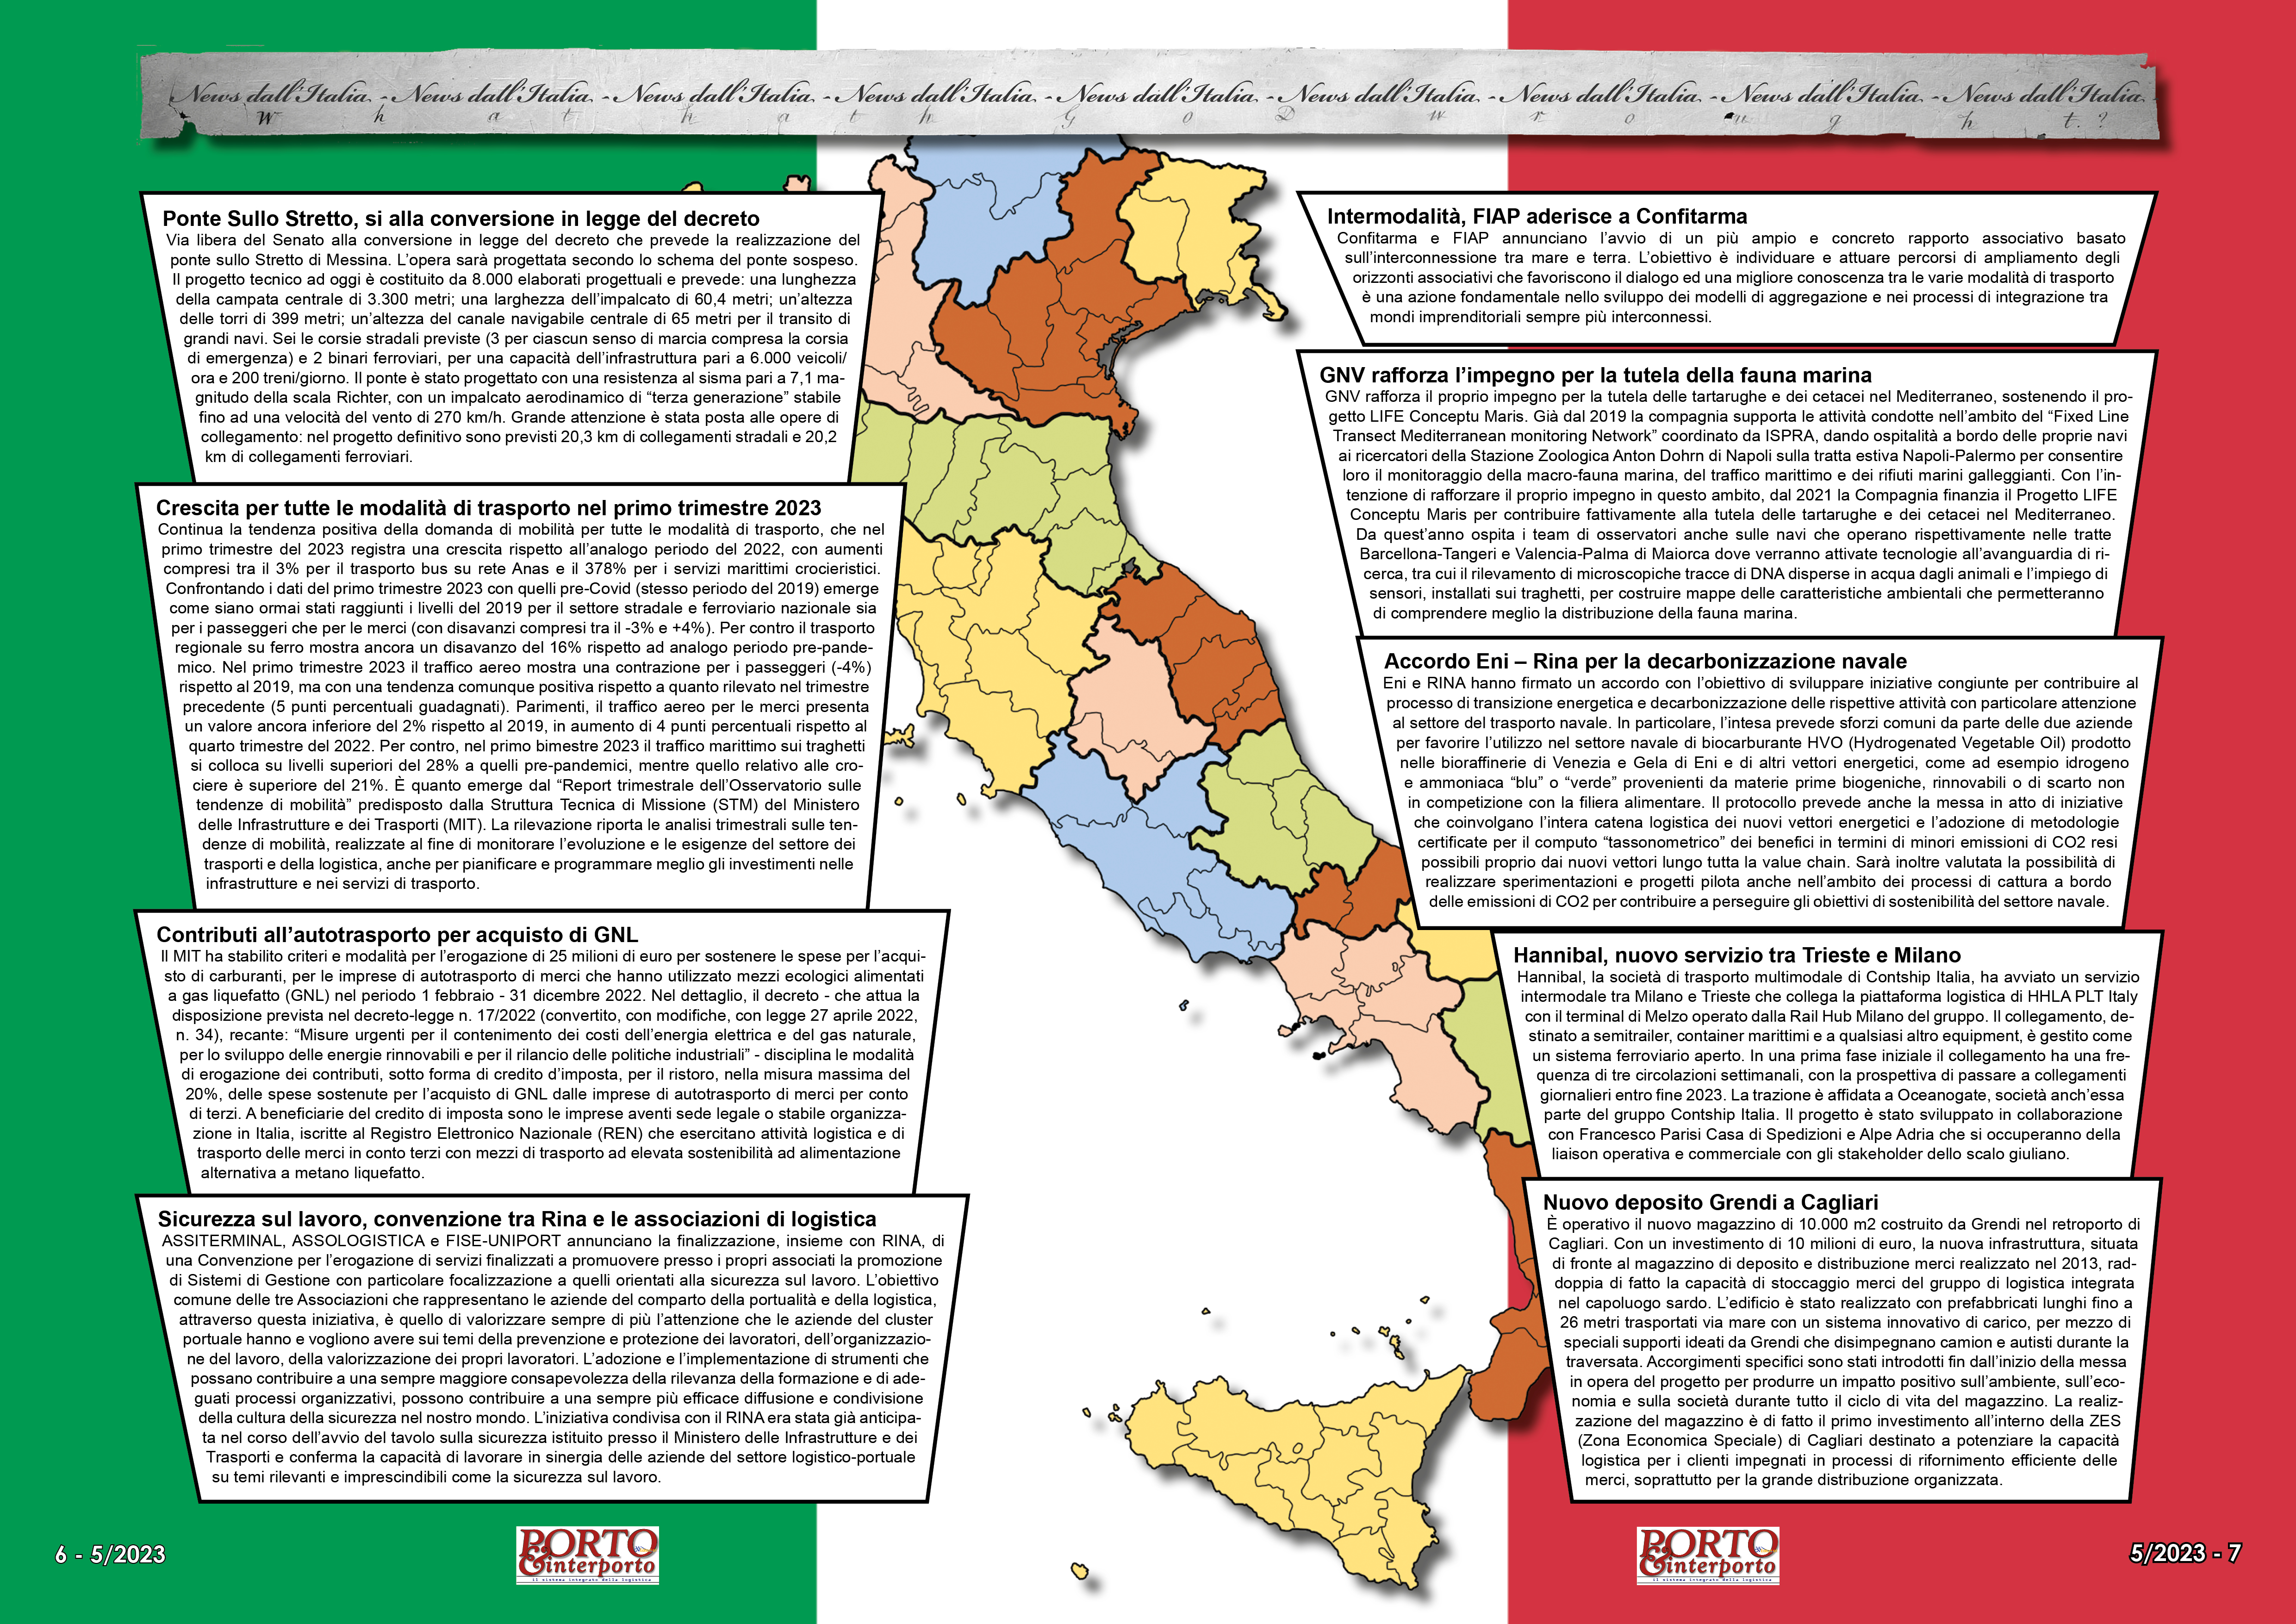 MAGGIO 2023 PAG. 6 - NEWS DALL'ITALIA